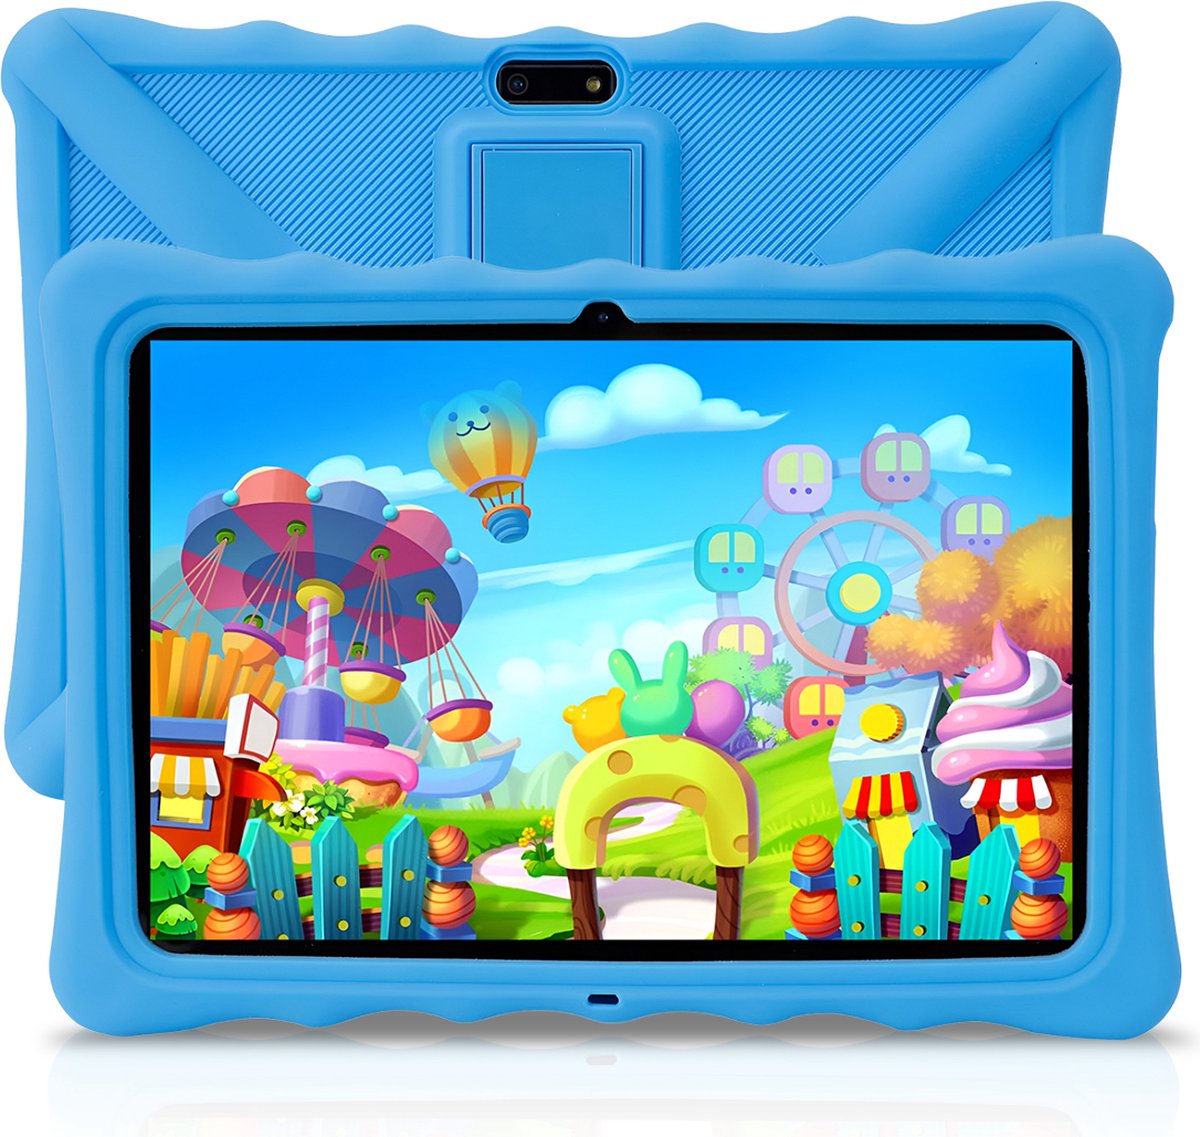 ZINLY® Kindertablet XL - Tablet - 10 inch - 5000 mAh batterij - Android 10.0 - Langdurig gebruik - Kids Proof - Kinder tablet voor kinderen vanaf 3 jaar - Incl beschermhoes & Ouderlijk Toezicht App - Blauw